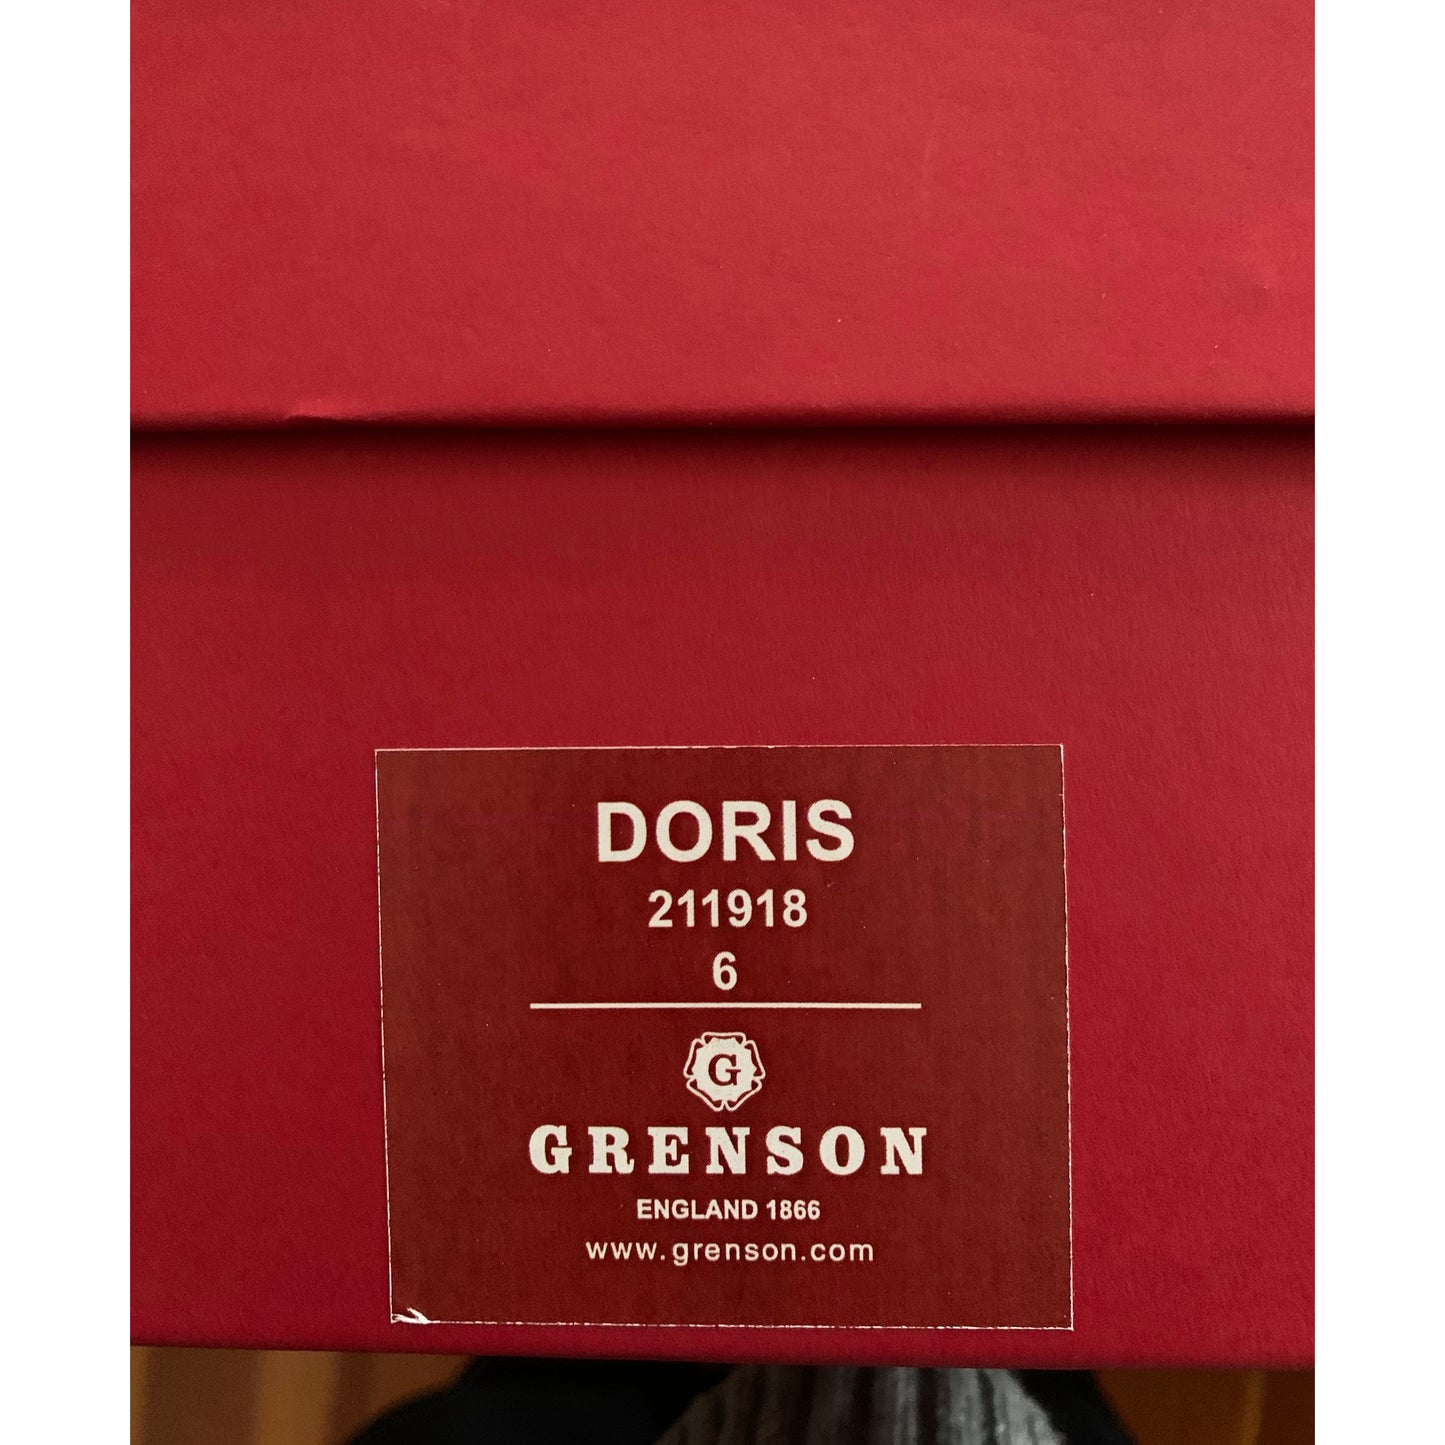 Grenson "Doris" Boot in Black, size 6UK/8.5US